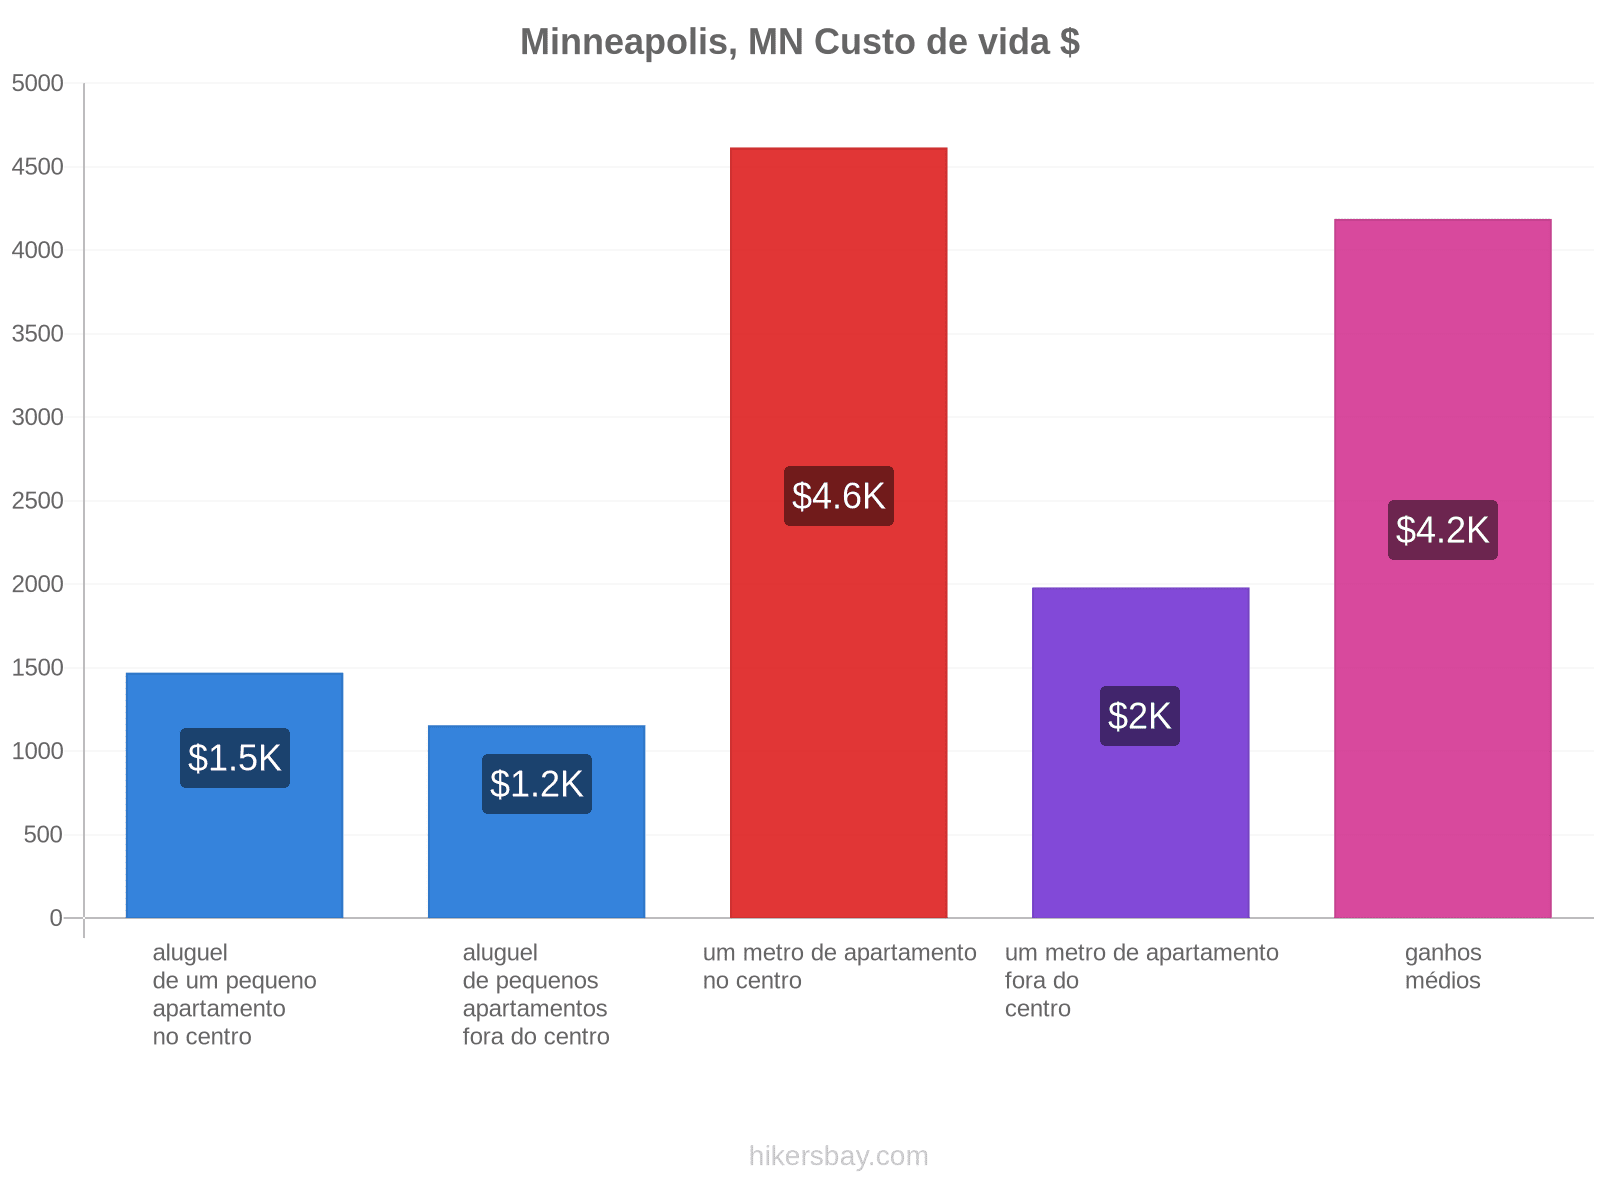 Minneapolis, MN custo de vida hikersbay.com